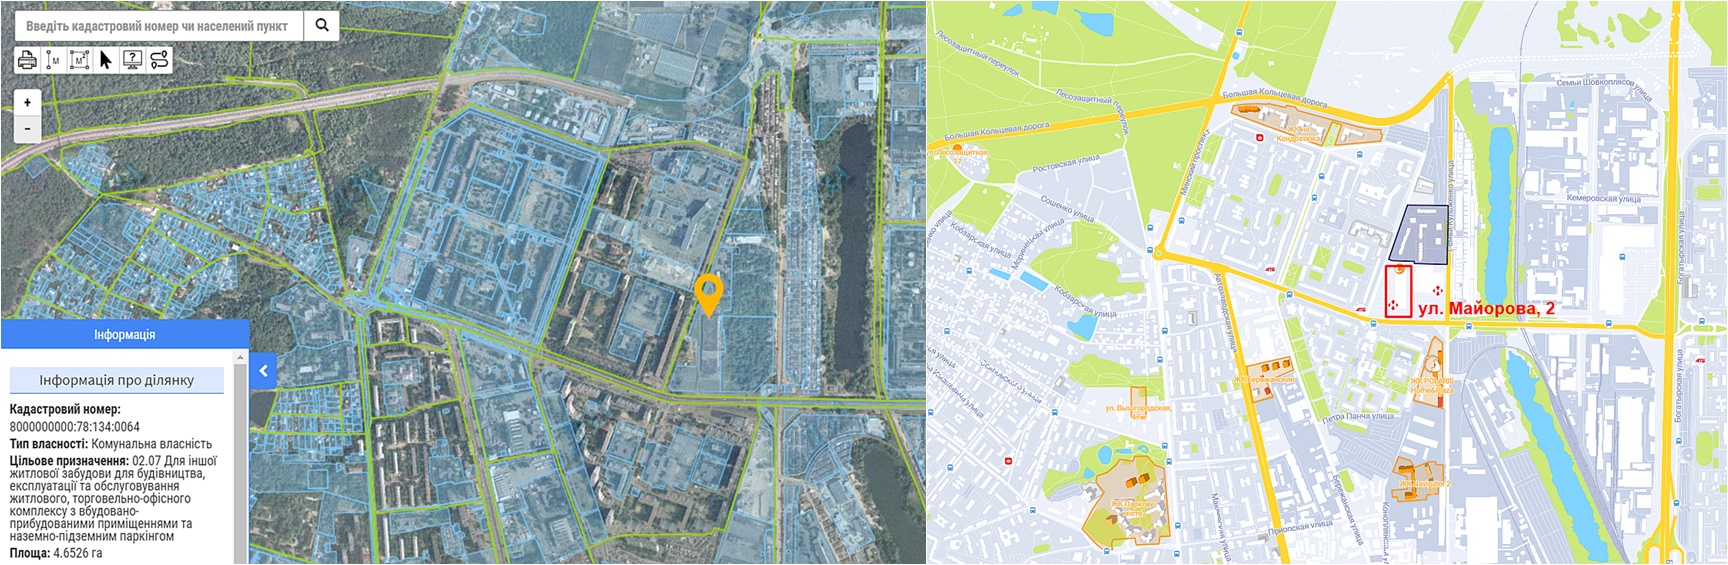 Новый ЖК по ул. Калнышевского, 2 данные кадастра и на карте